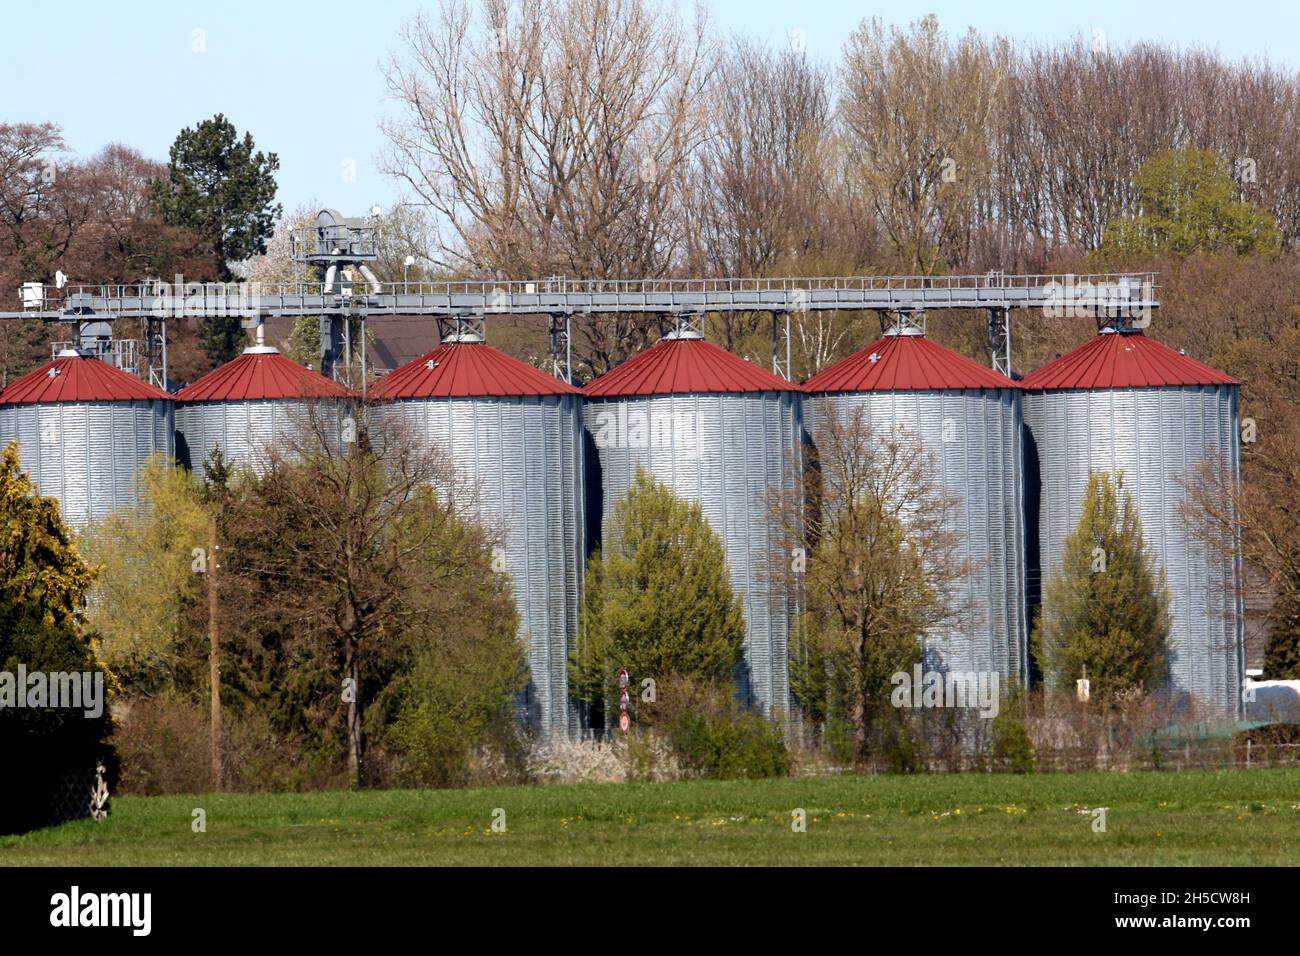 Grain silos on a farm, Germany Stock Photo